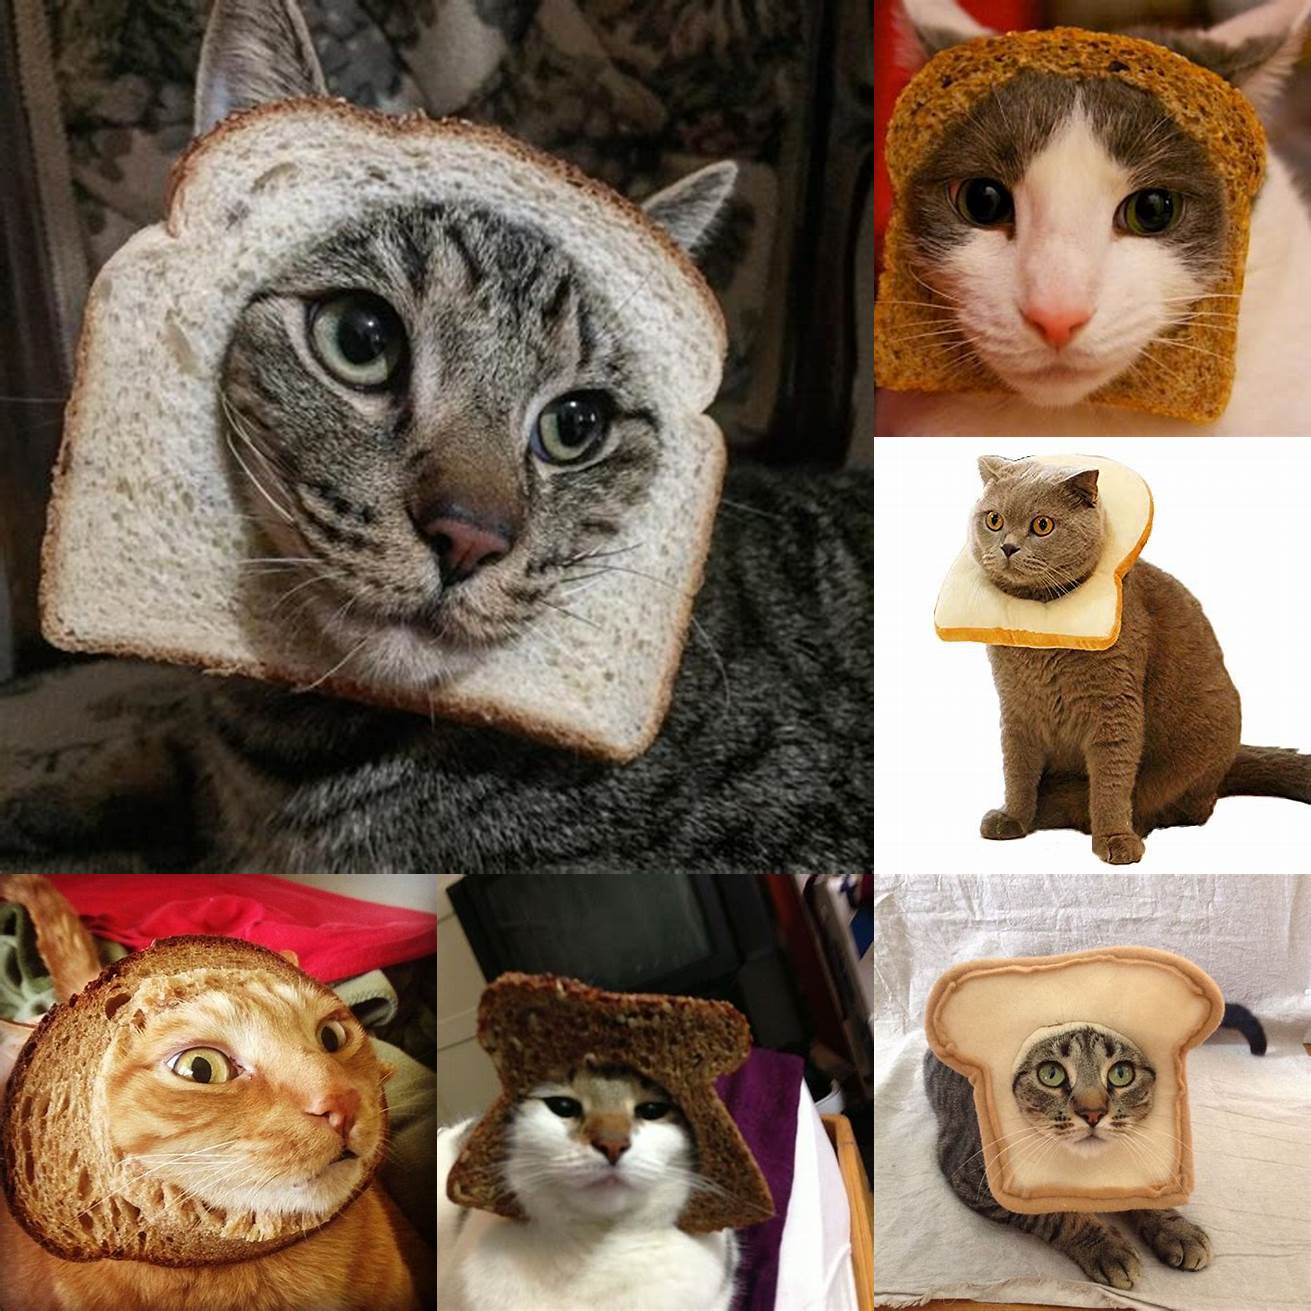 Cat in Bread wearing a hat